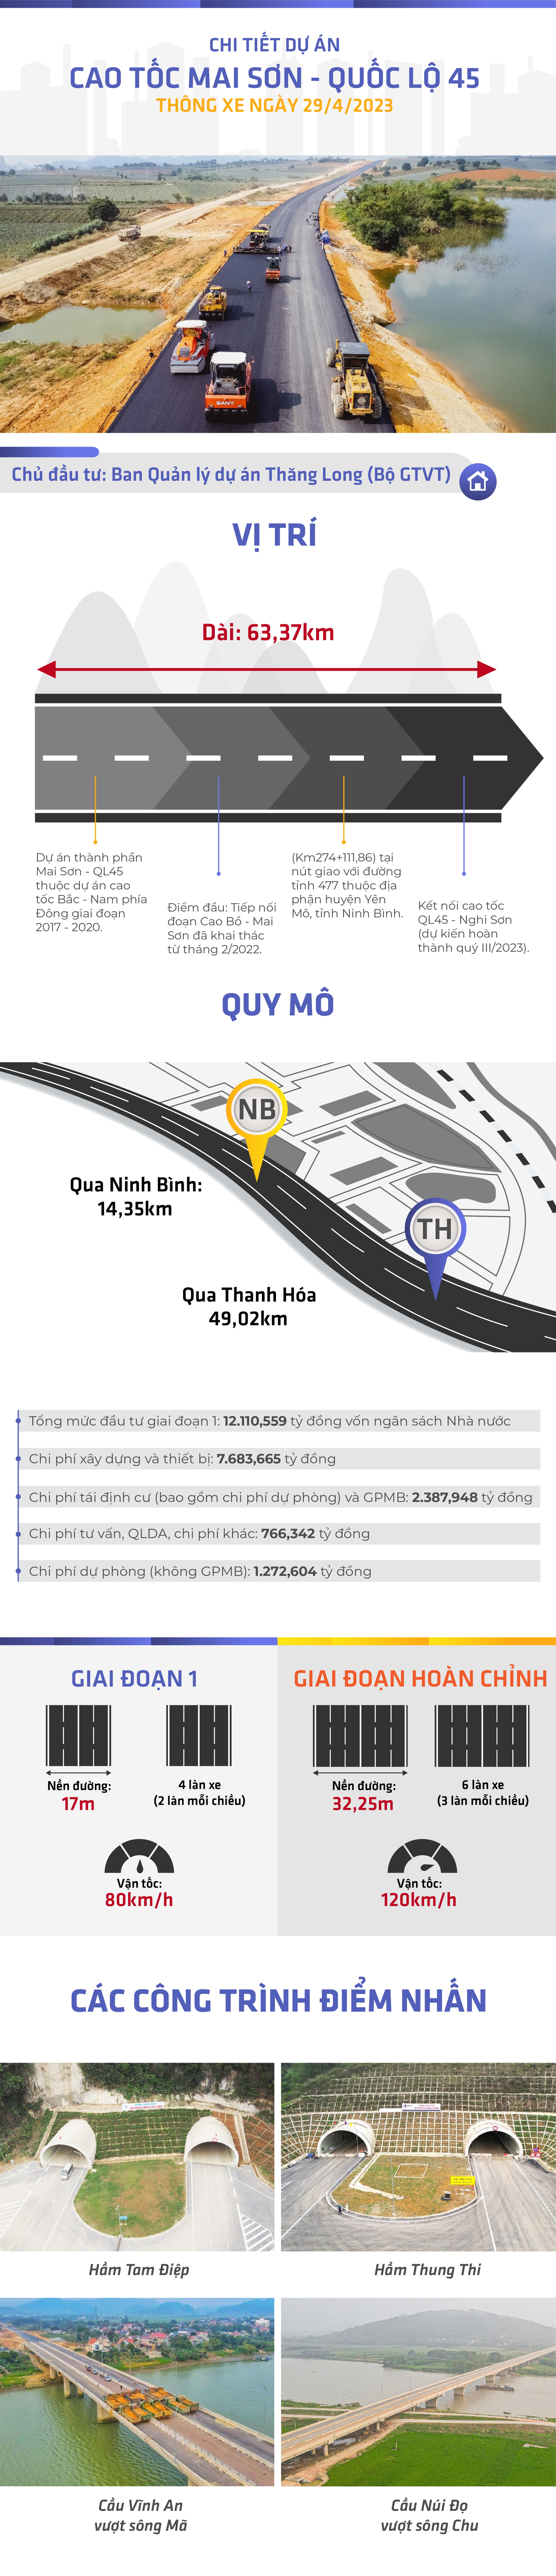 INFOGRAPHIC: Cao tốc Mai Sơn - QL45 chuẩn bị thông xe, từ Hà Nội đi Thanh Hóa chỉ hơn 2 tiếng - Ảnh 1.